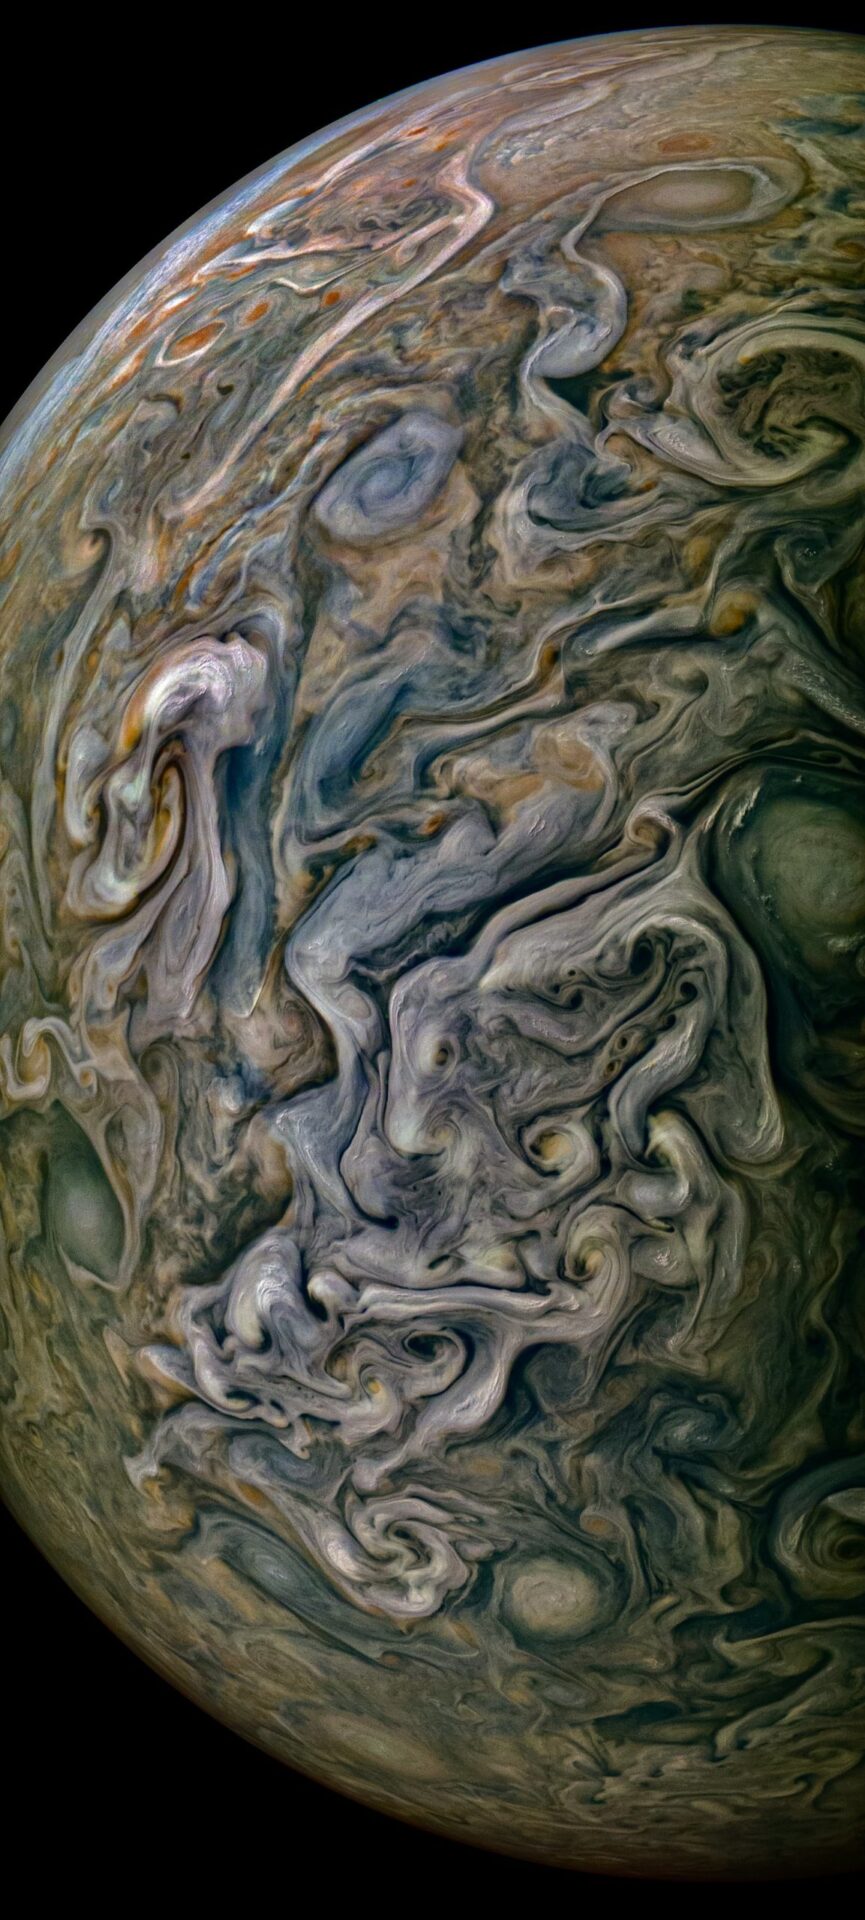 【グロい？】カオスと驚異、木星の最新画像が撮影される